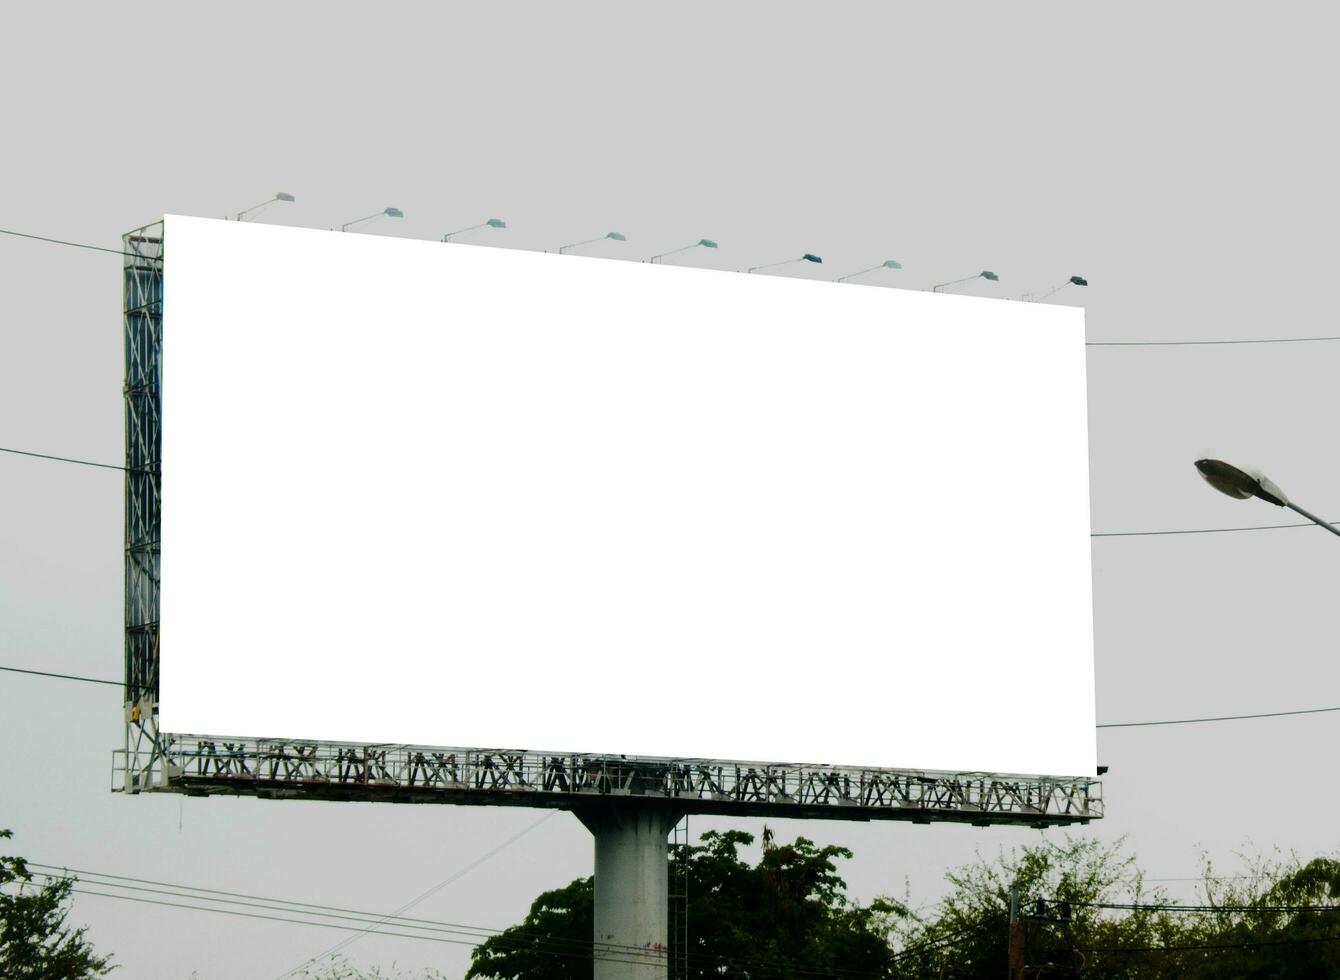 anslagstavla tom för utomhus- reklam affisch på blå himmel. foto